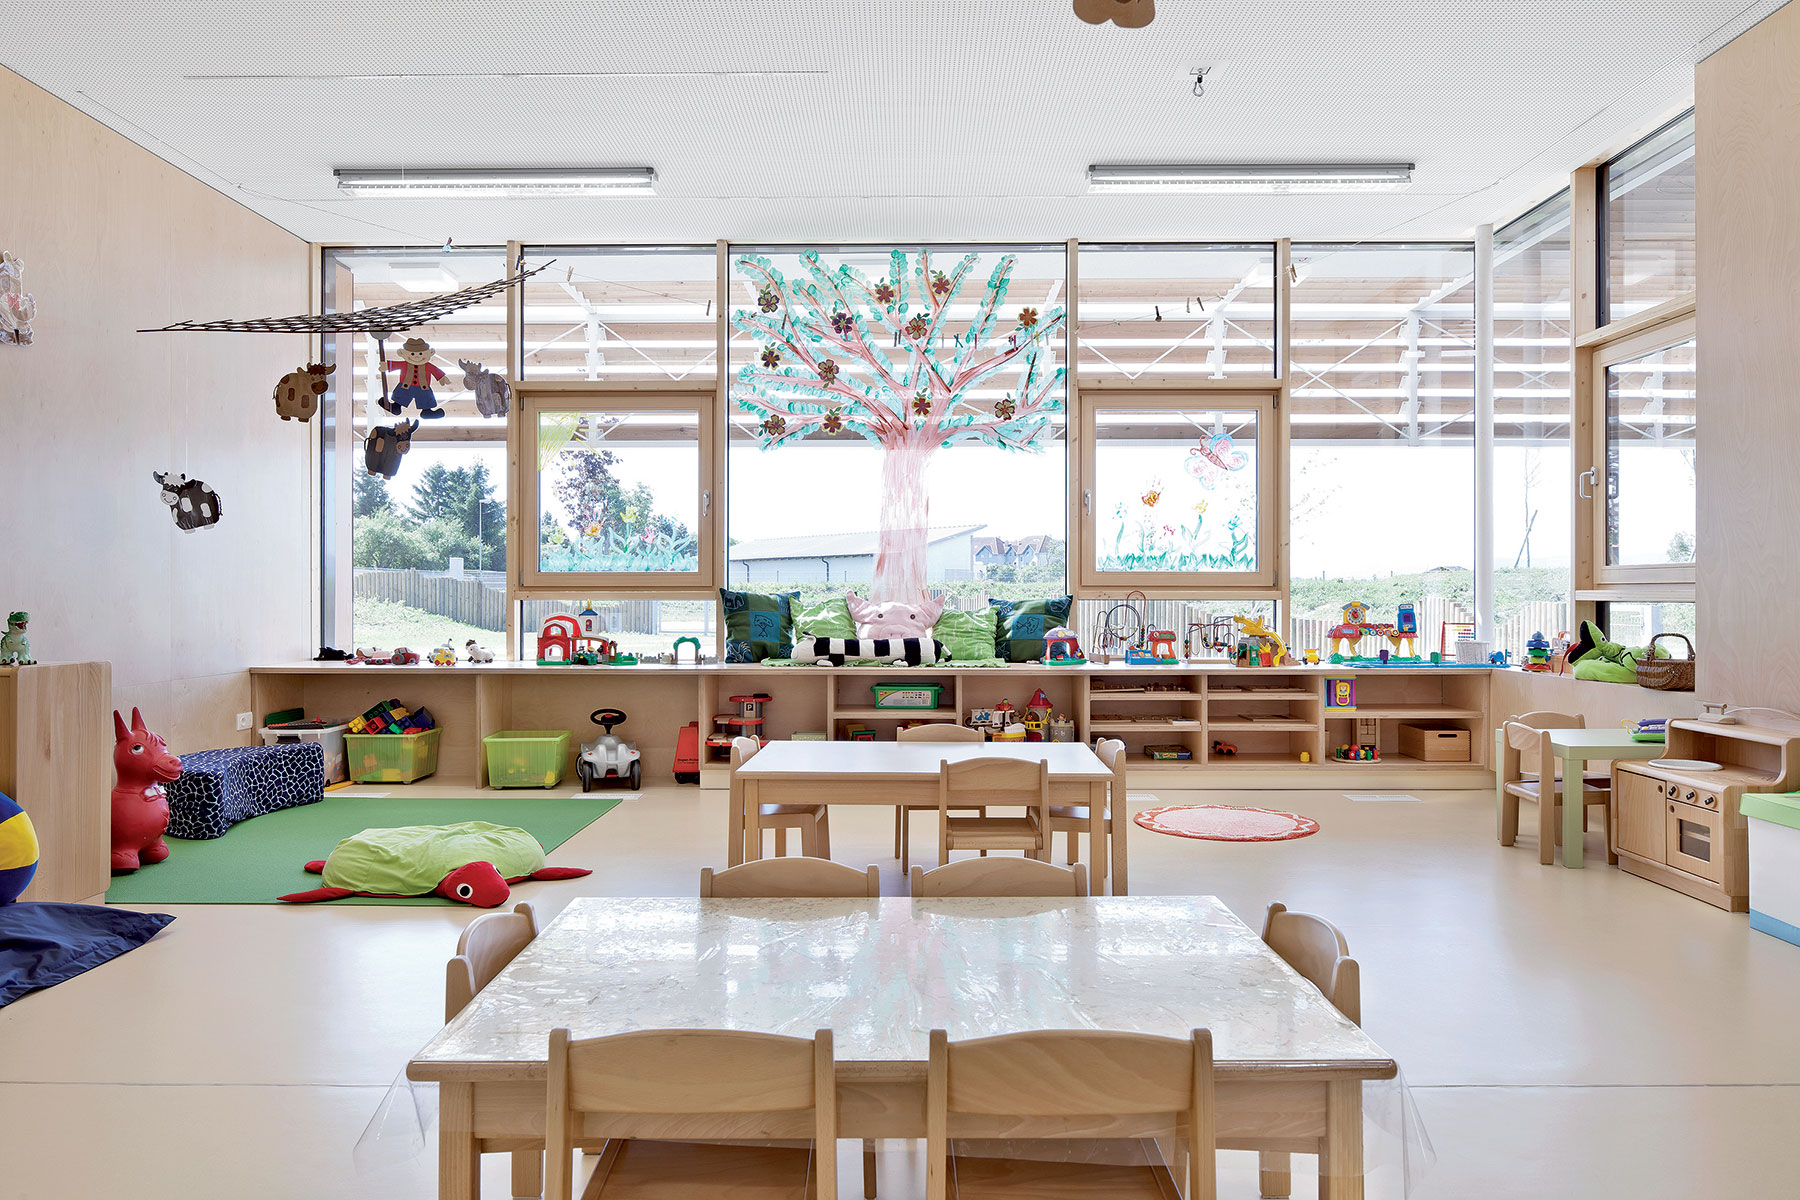 Dostatok denného svetla je v materskej škole prioritou. Rovnako aj primeraná mierka zariadenia interiéru.